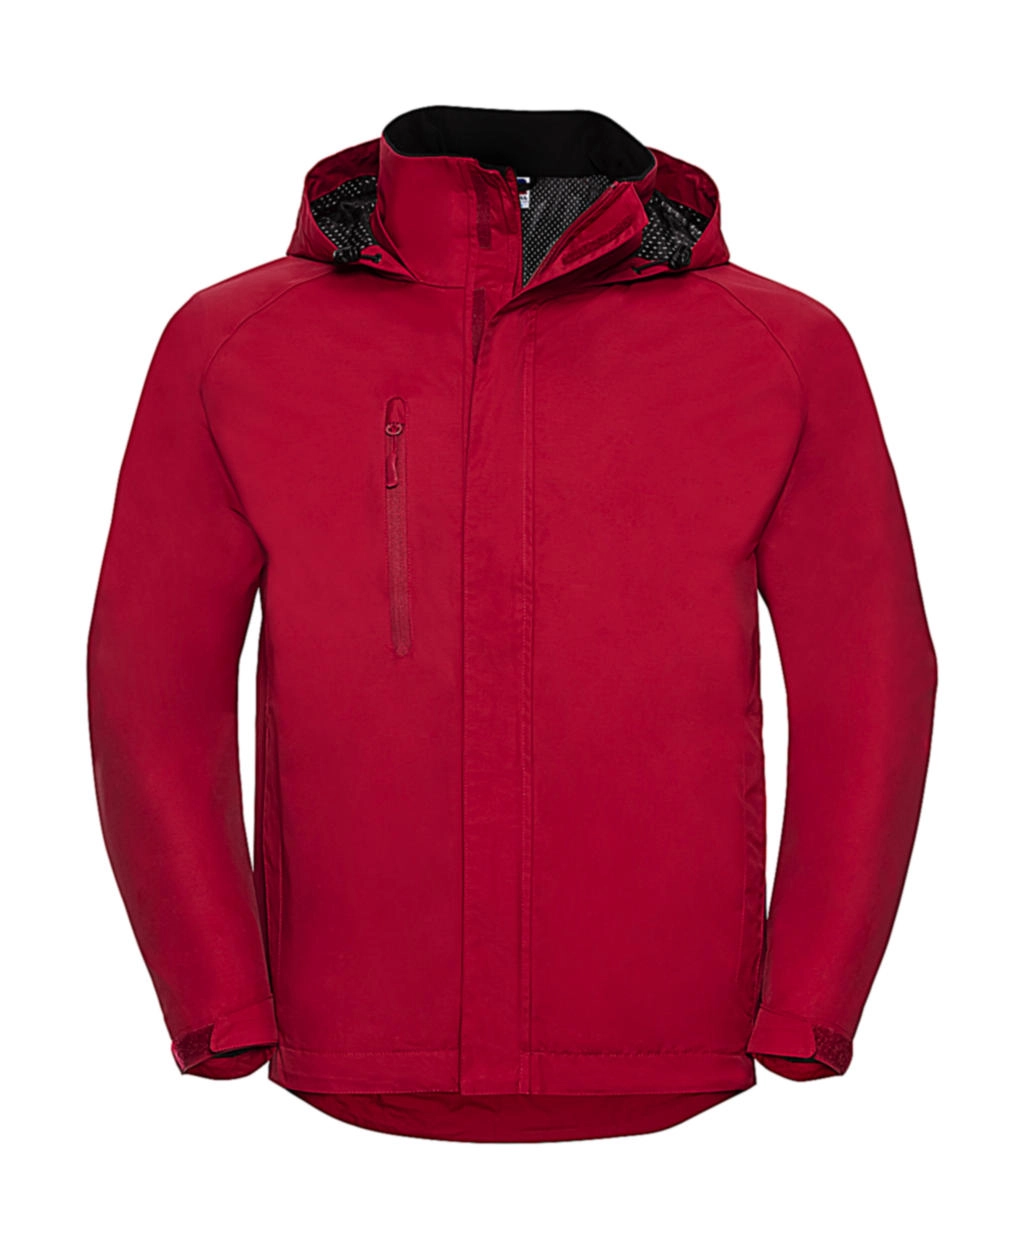 HydraPlus 2000 Jacket zum Besticken und Bedrucken in der Farbe Classic Red mit Ihren Logo, Schriftzug oder Motiv.